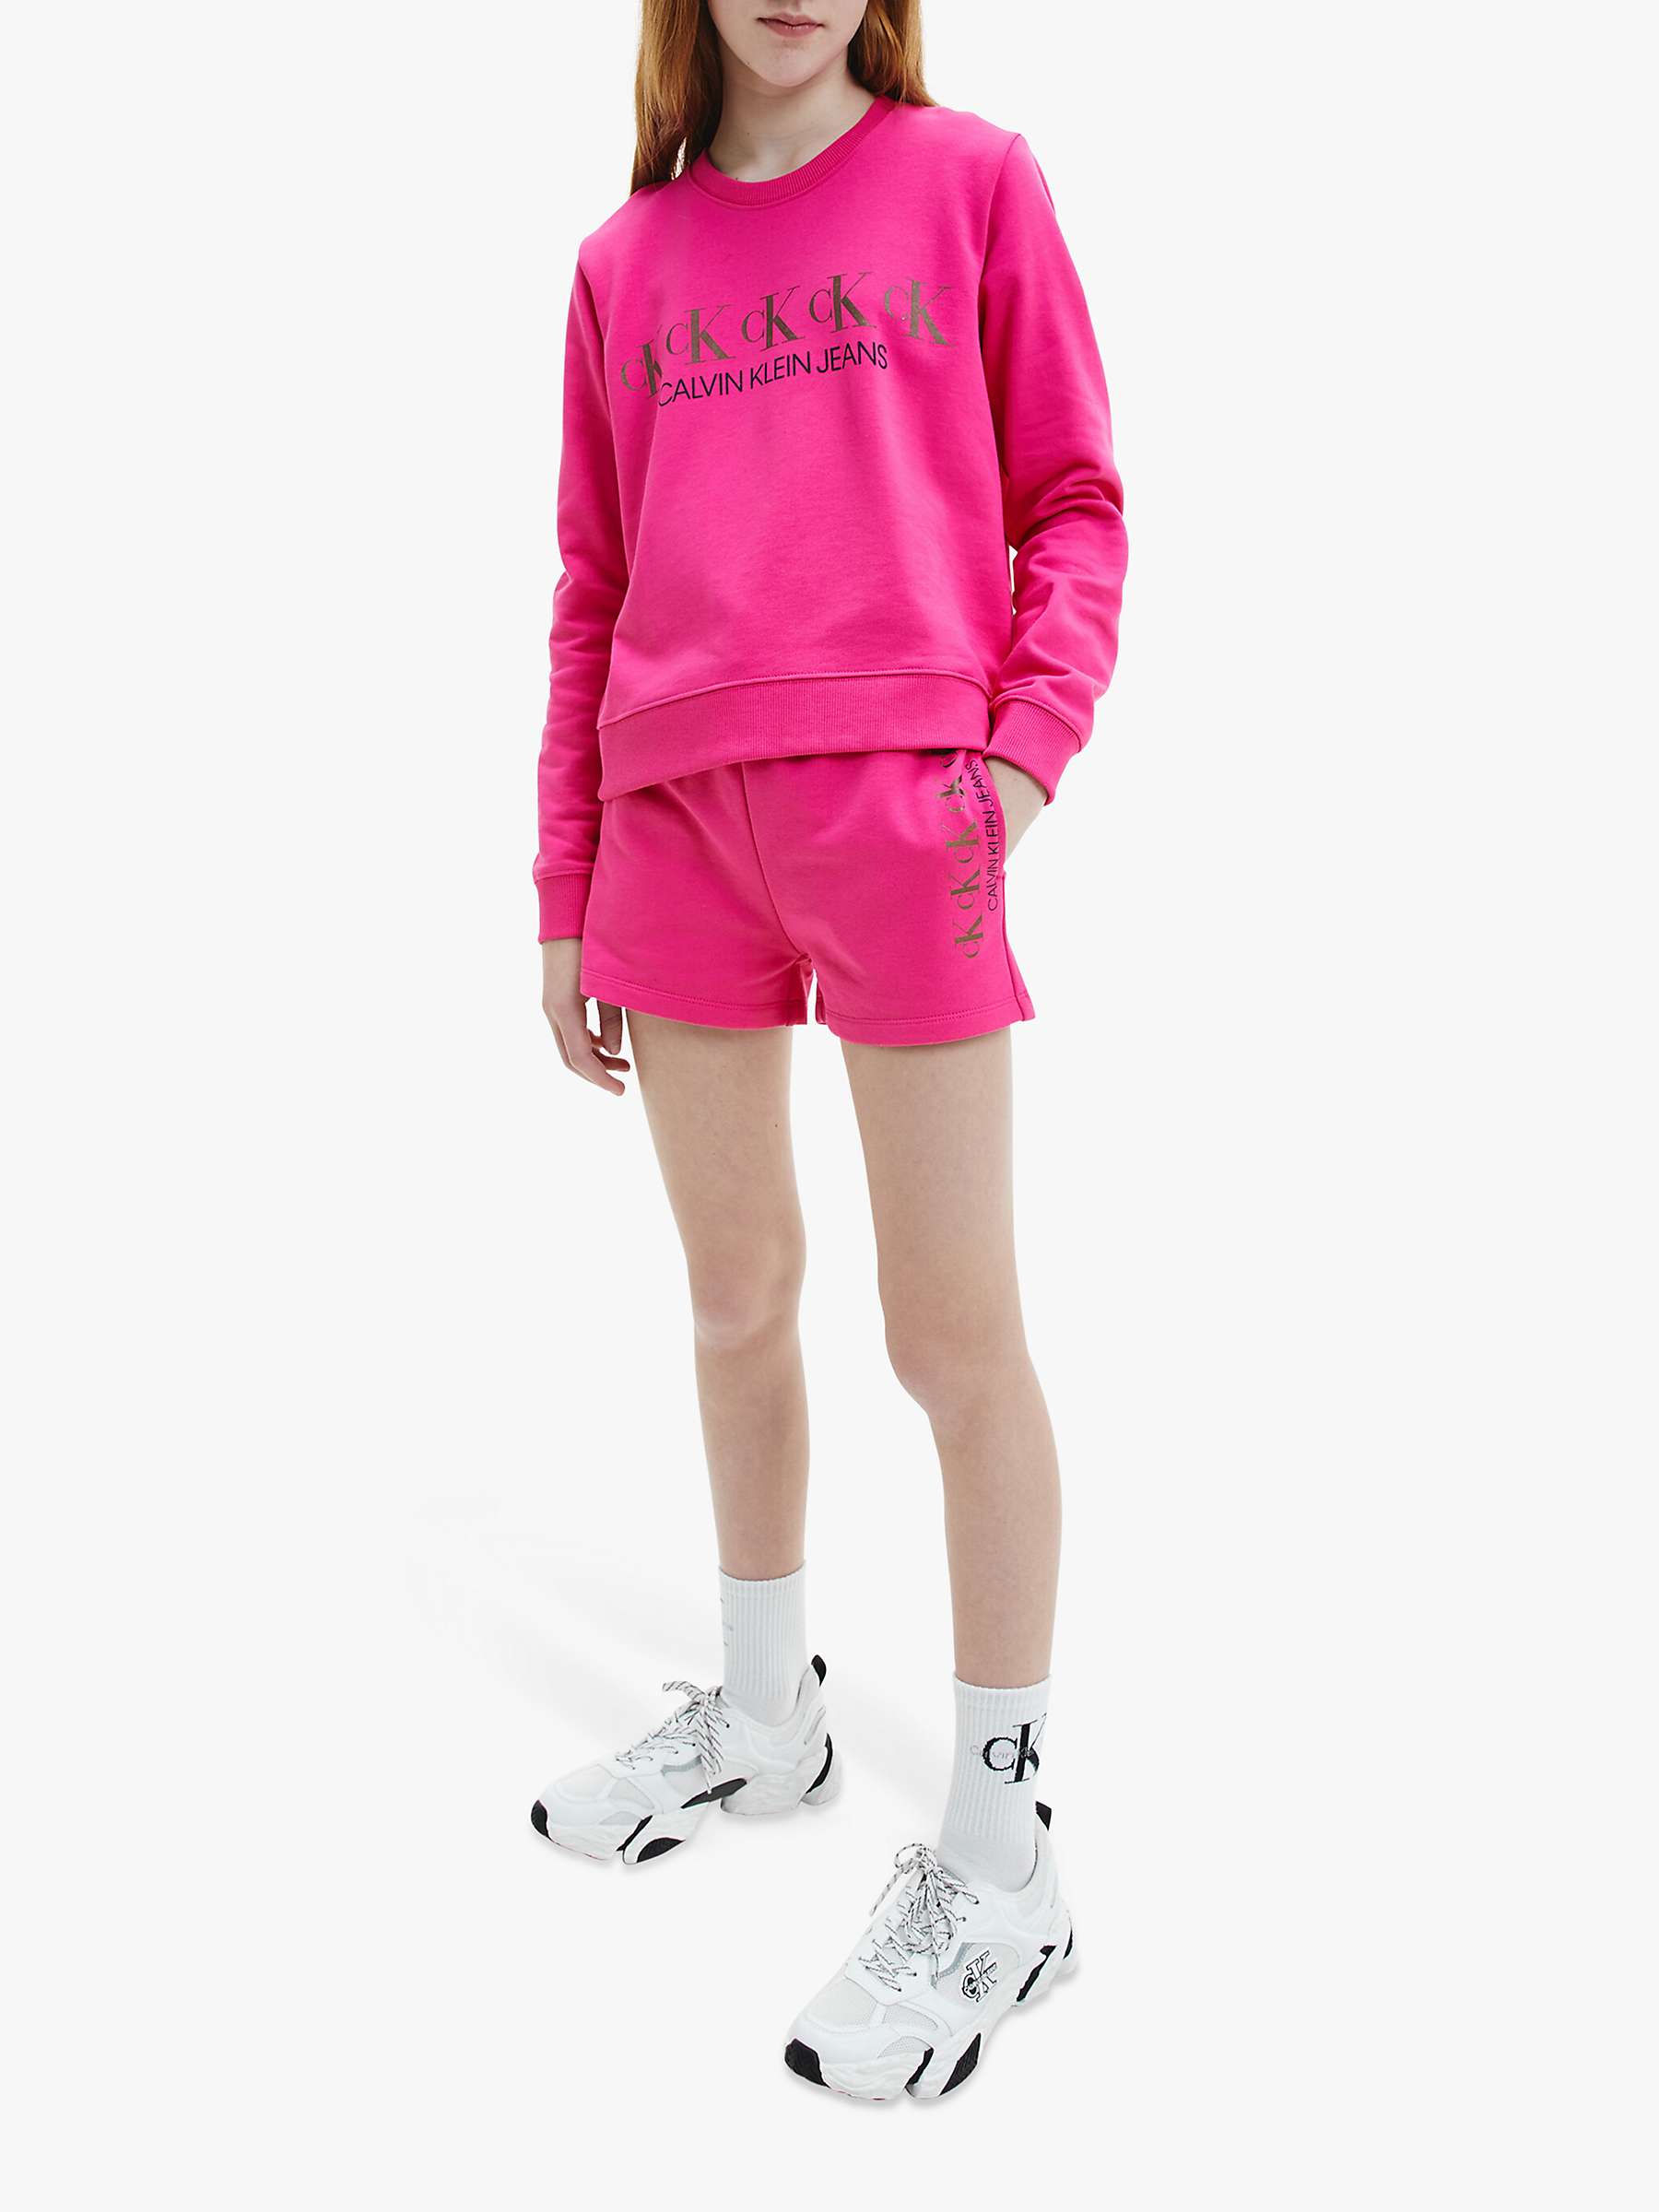 Calvin Klein Kids' Foil Logo Sweatshirt, Hot Magenta at John Lewis ...